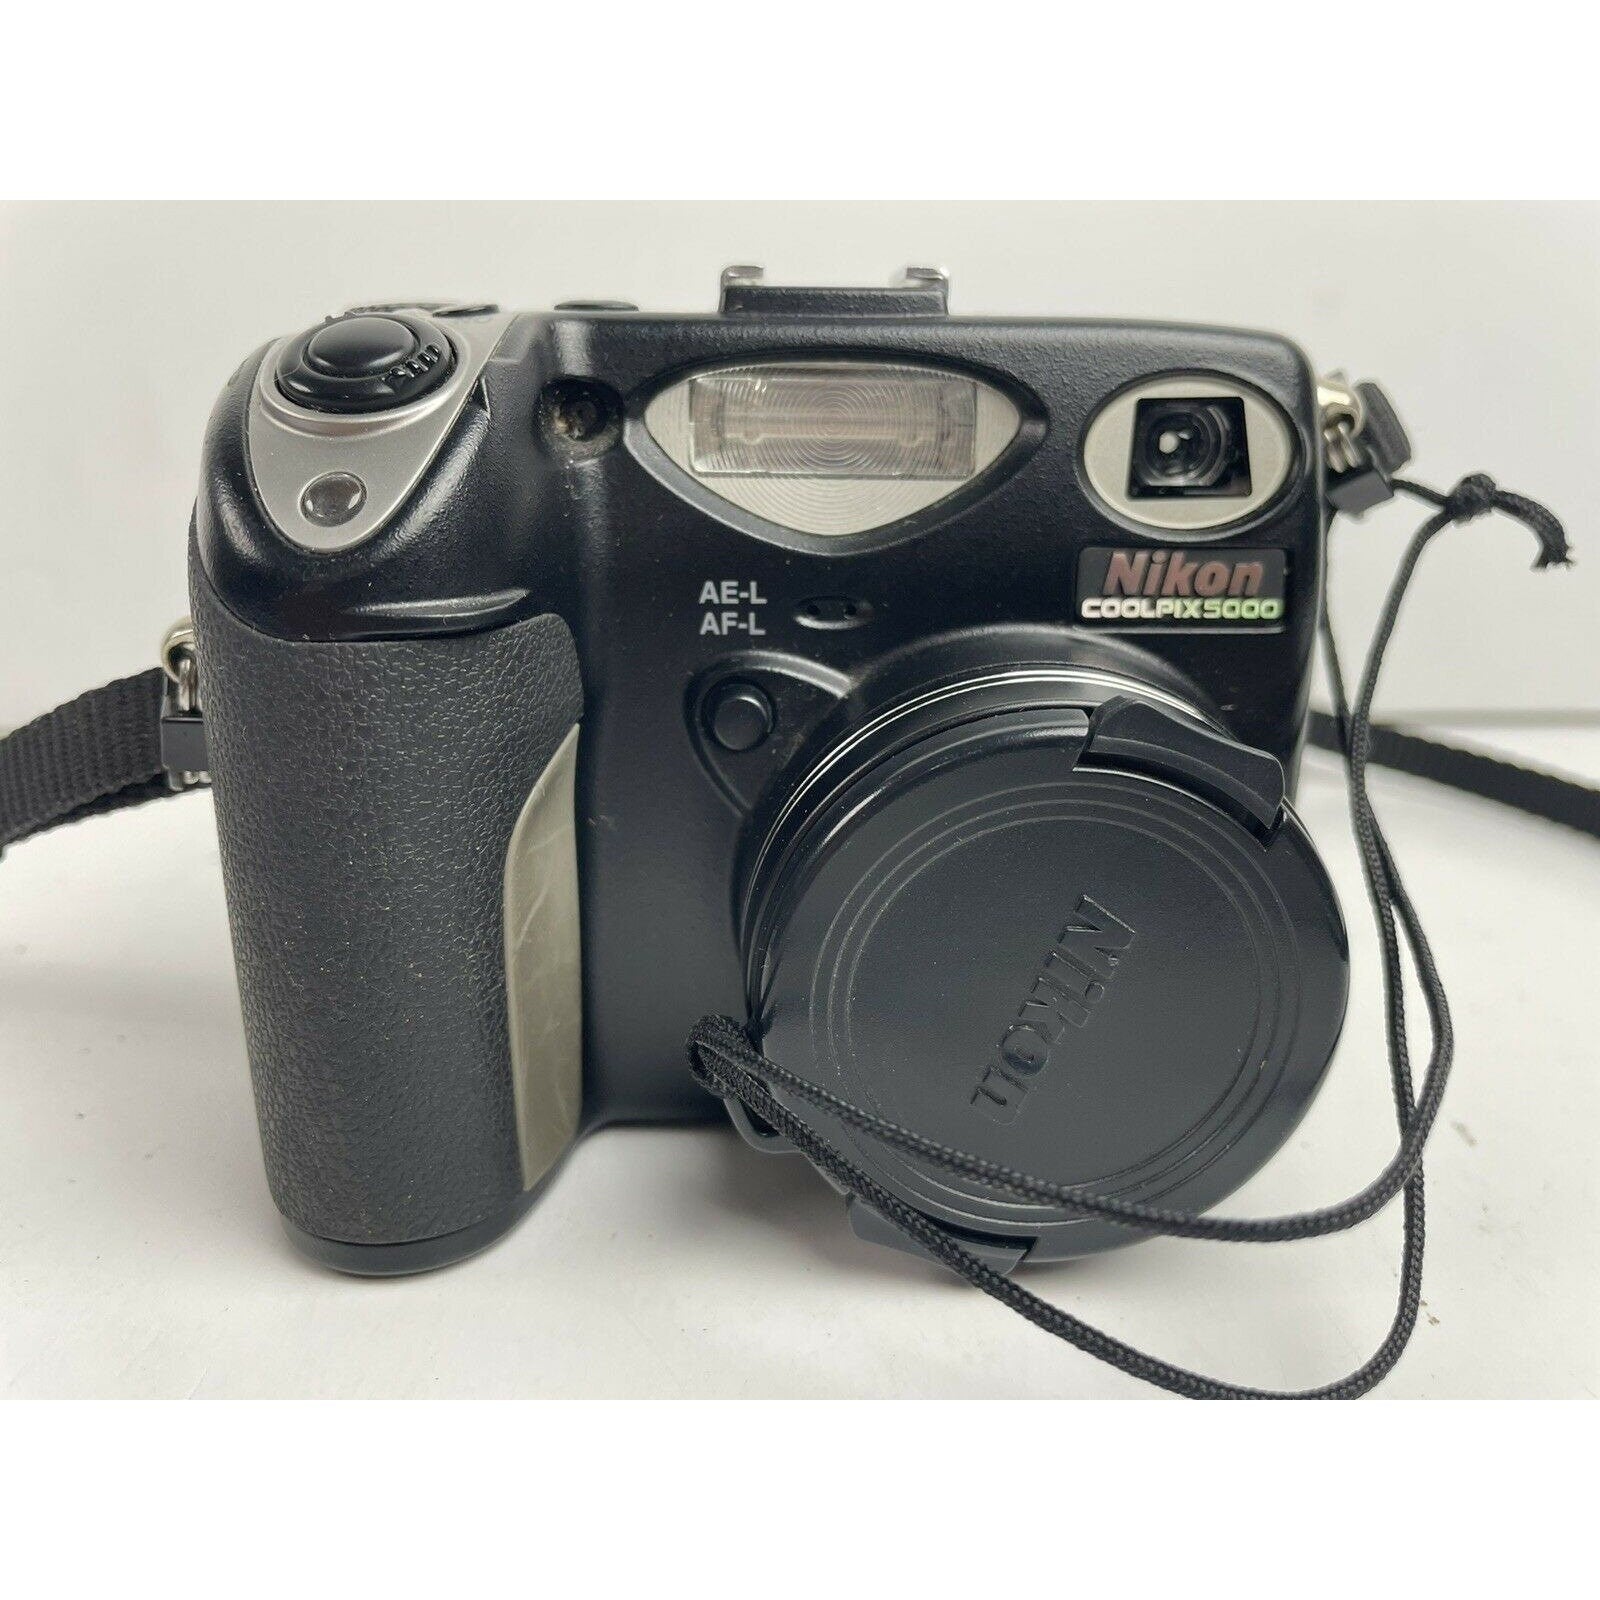 Nikon COOLPIX 5000 5.0MP Digital Camera - Black